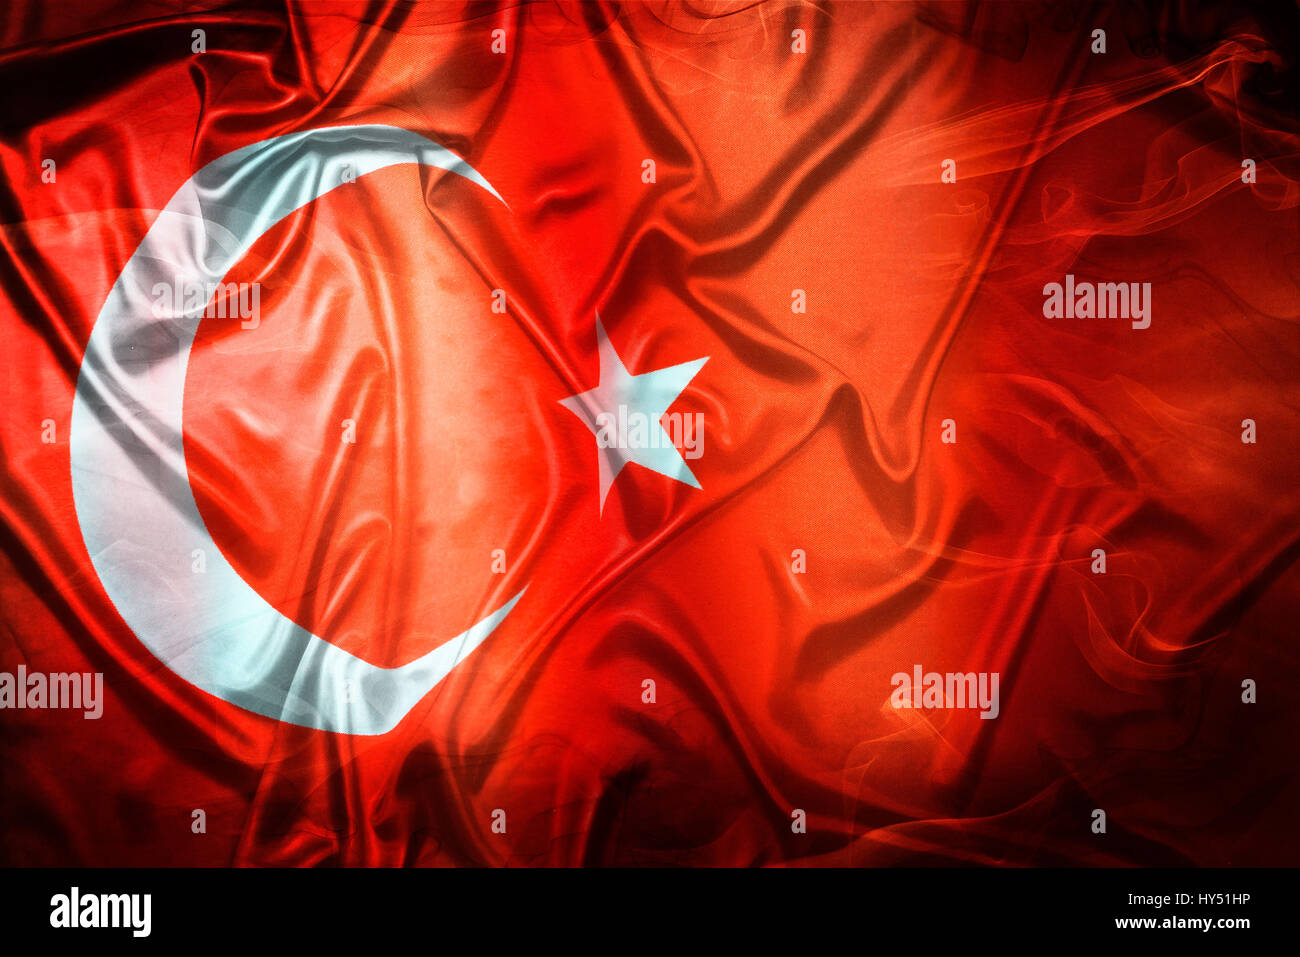 Flag of Turkey, Fahne der Tuerkei Stock Photo